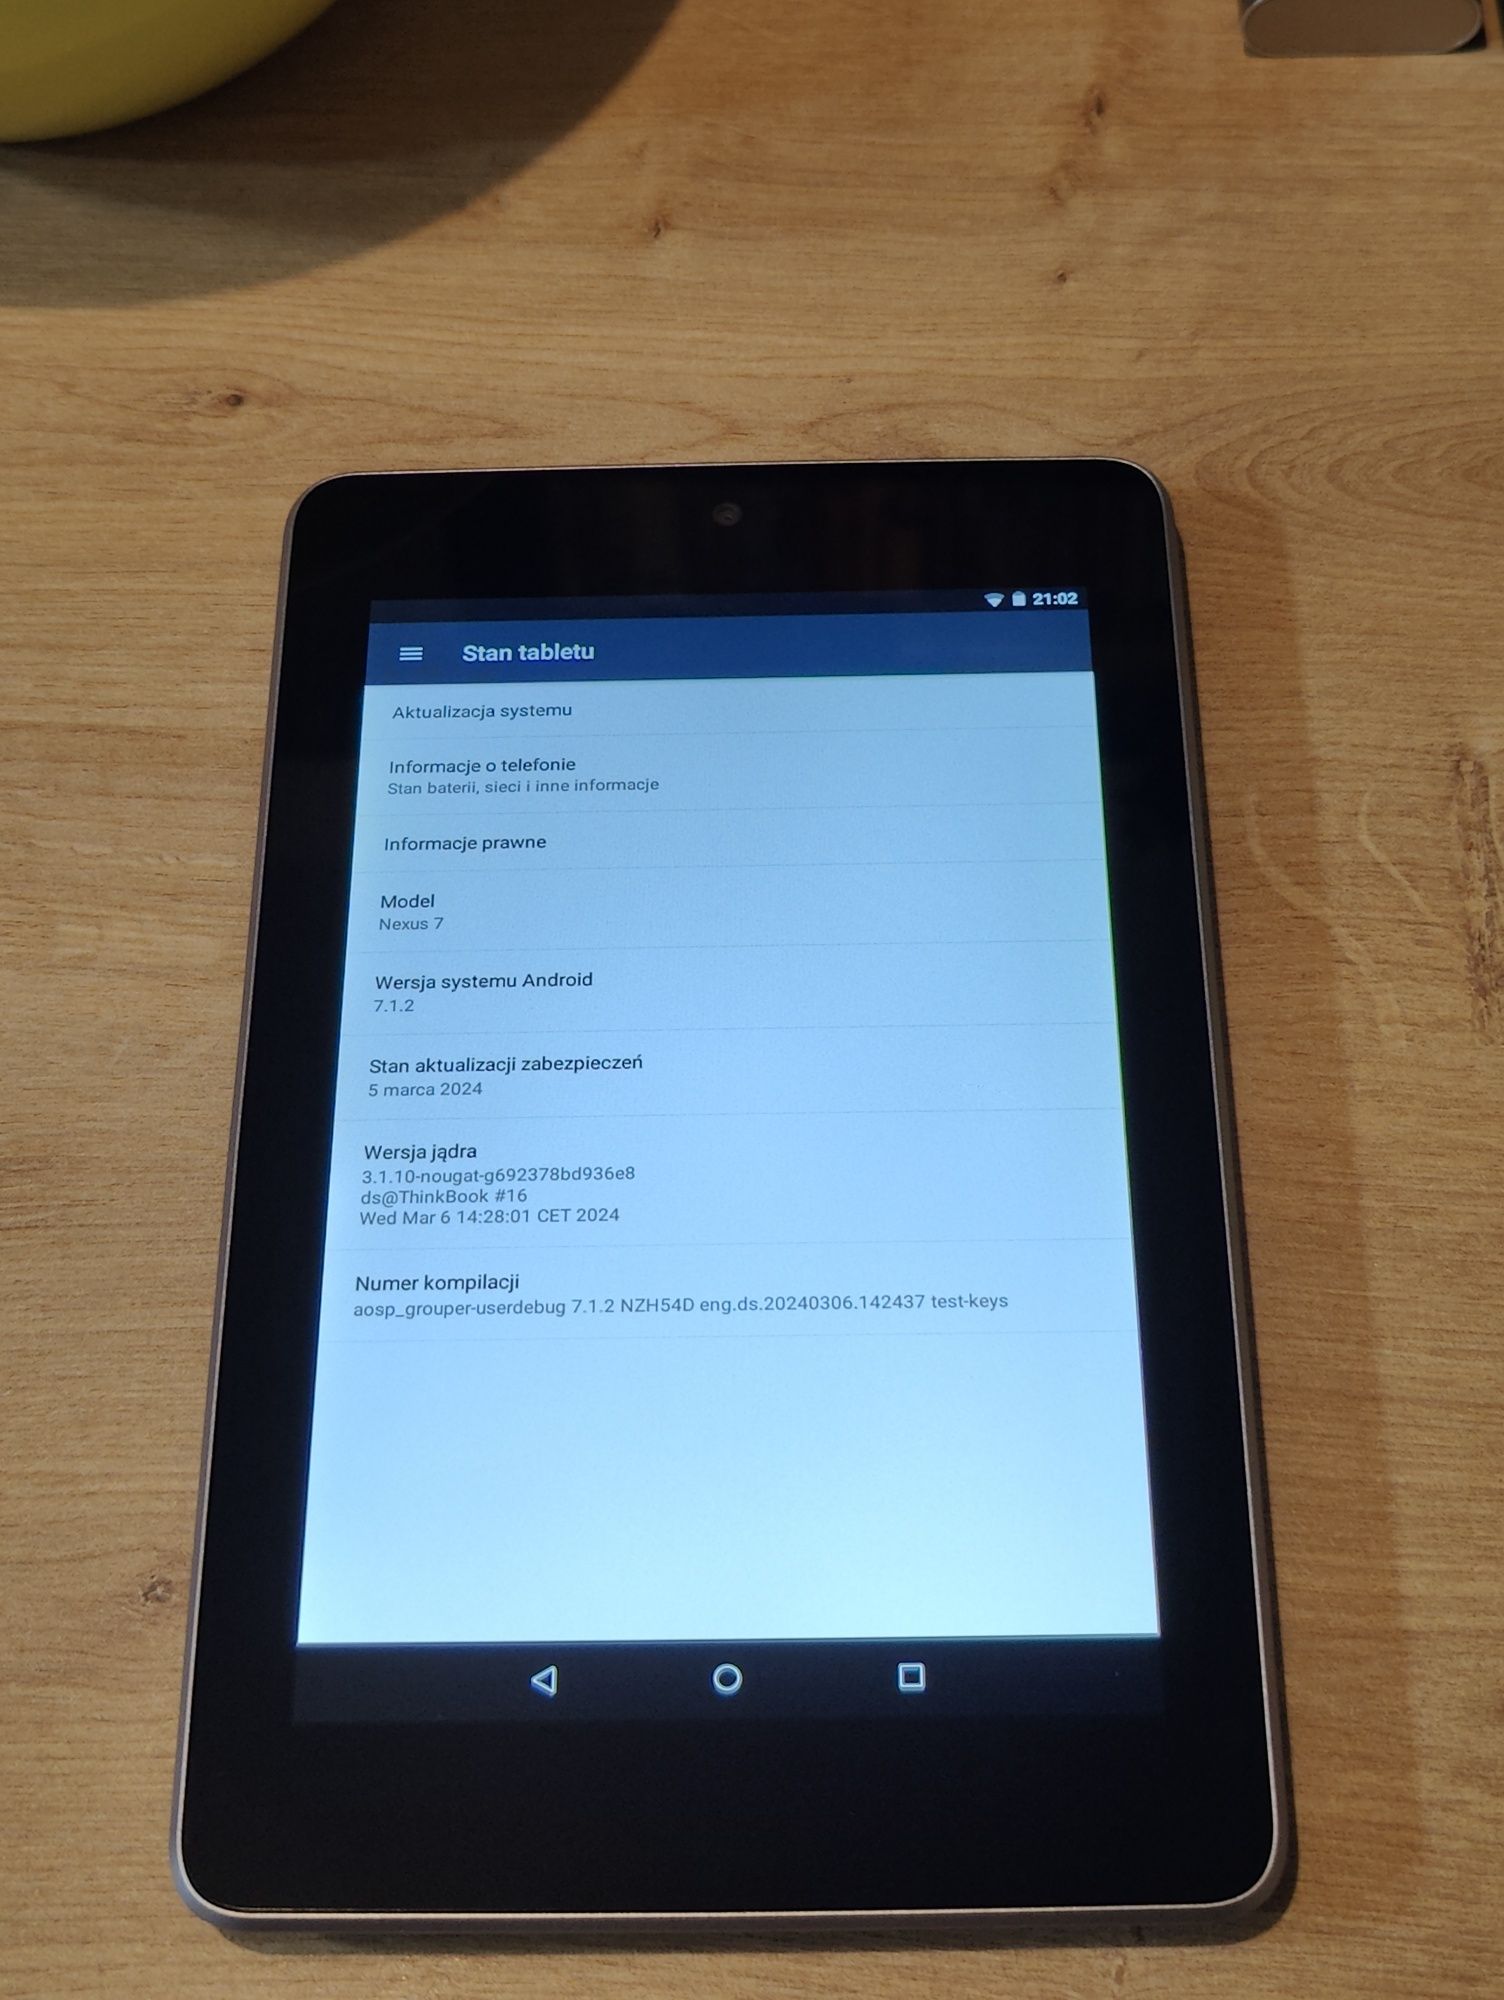 Tablet ASUS Nexus 7